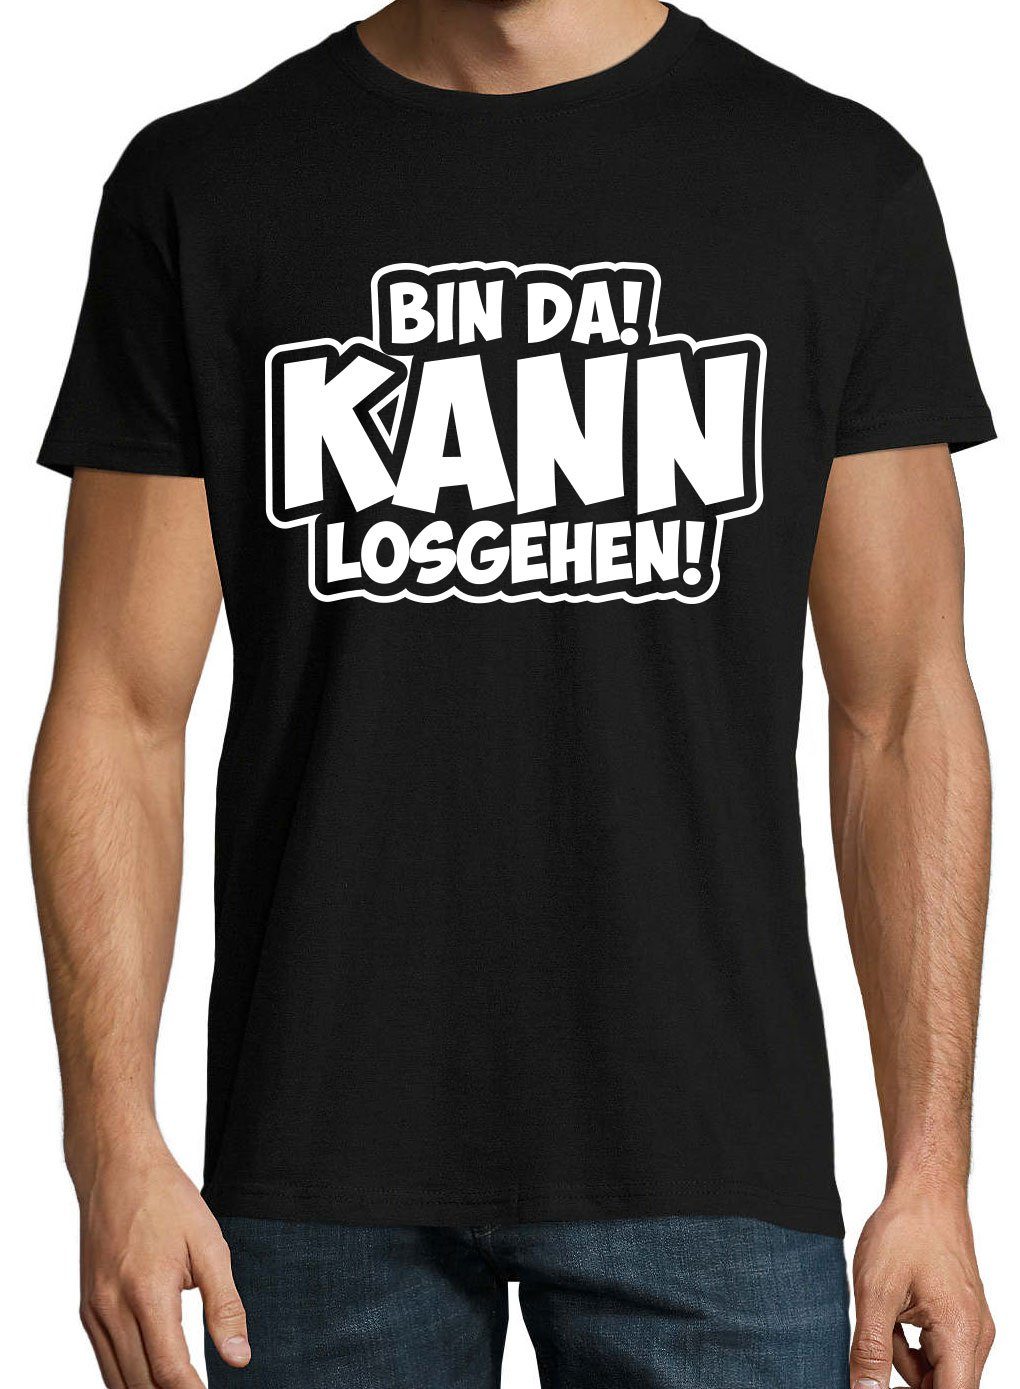 T-Shirt BIN Designz DA! Gehen! Shirt Los mit Motivation Herren Kann Schwarz Youth Spruch